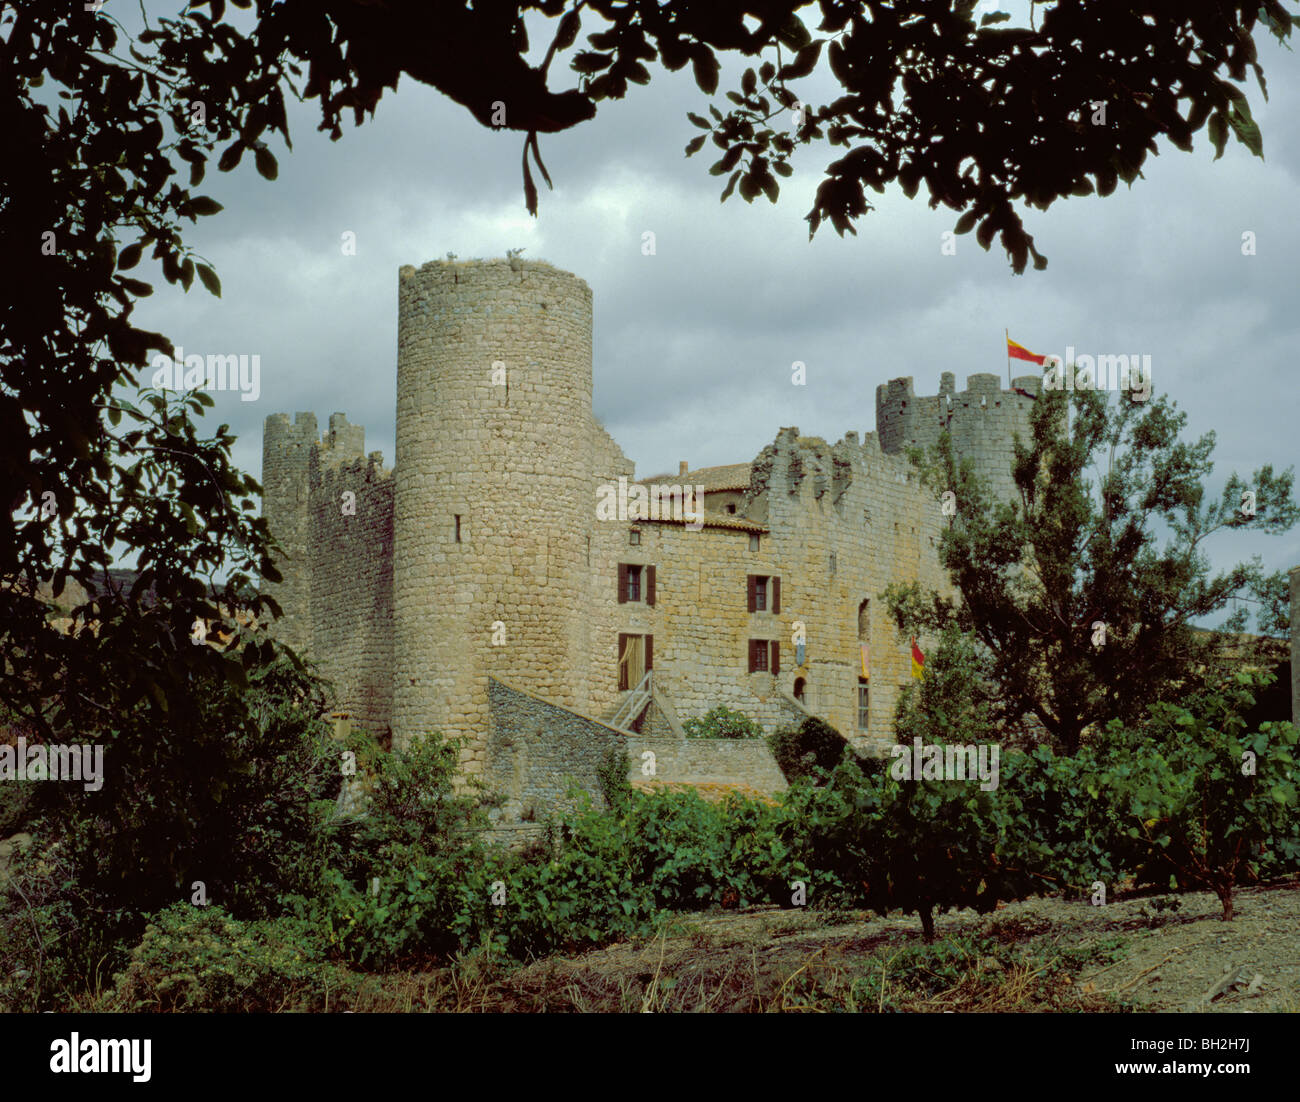 Ruined Château (Castle) Villerouge-Termenès, Aude, Languedoc-Roussillon, France. Stock Photo